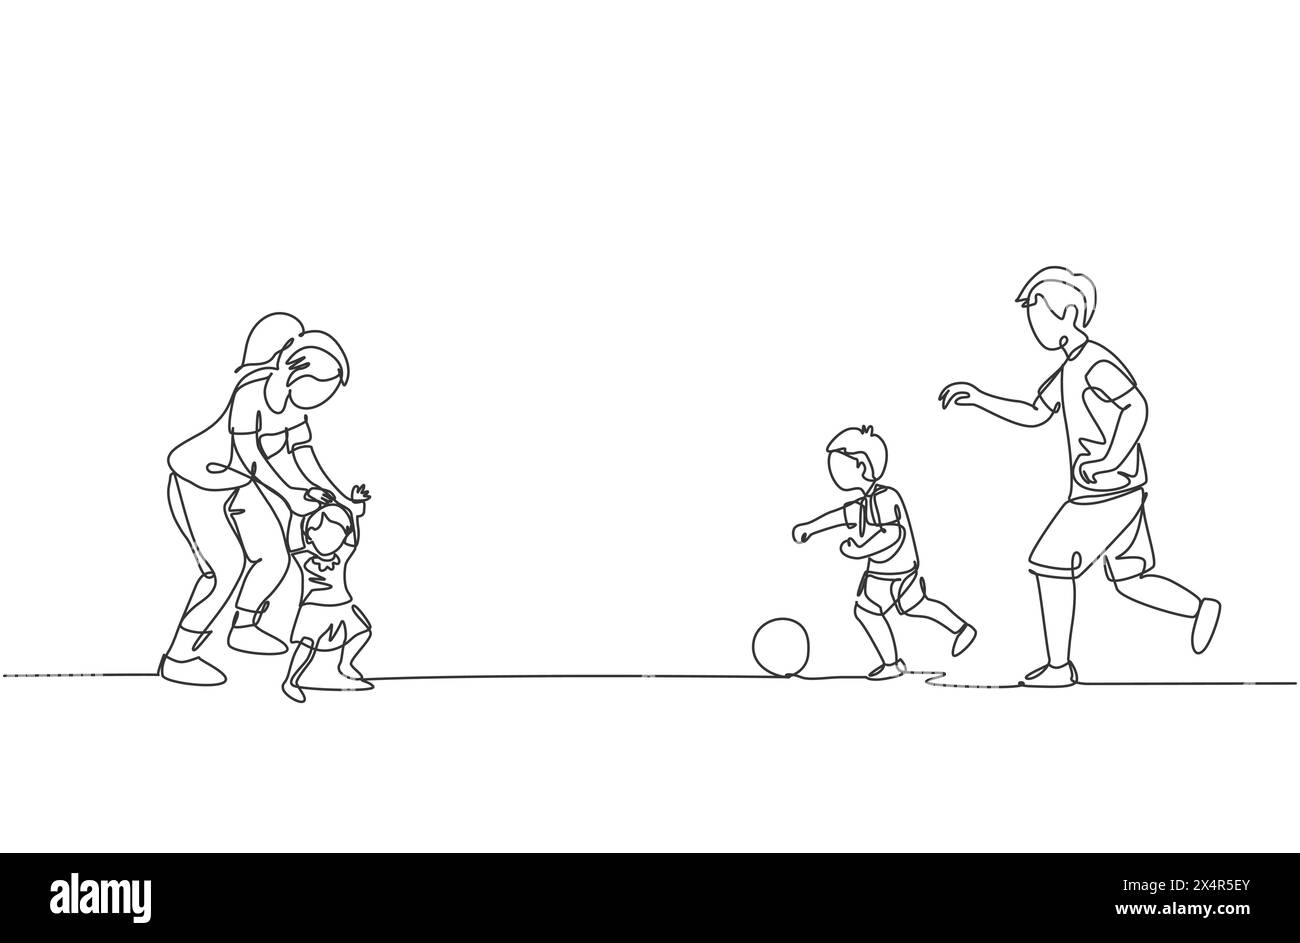 Un dessin au trait continu d'un jeune père jouant au football avec son fils tandis que sa mère apprend à sa fille à marcher sur le terrain. Concept de parentalité familiale heureuse. D Illustration de Vecteur